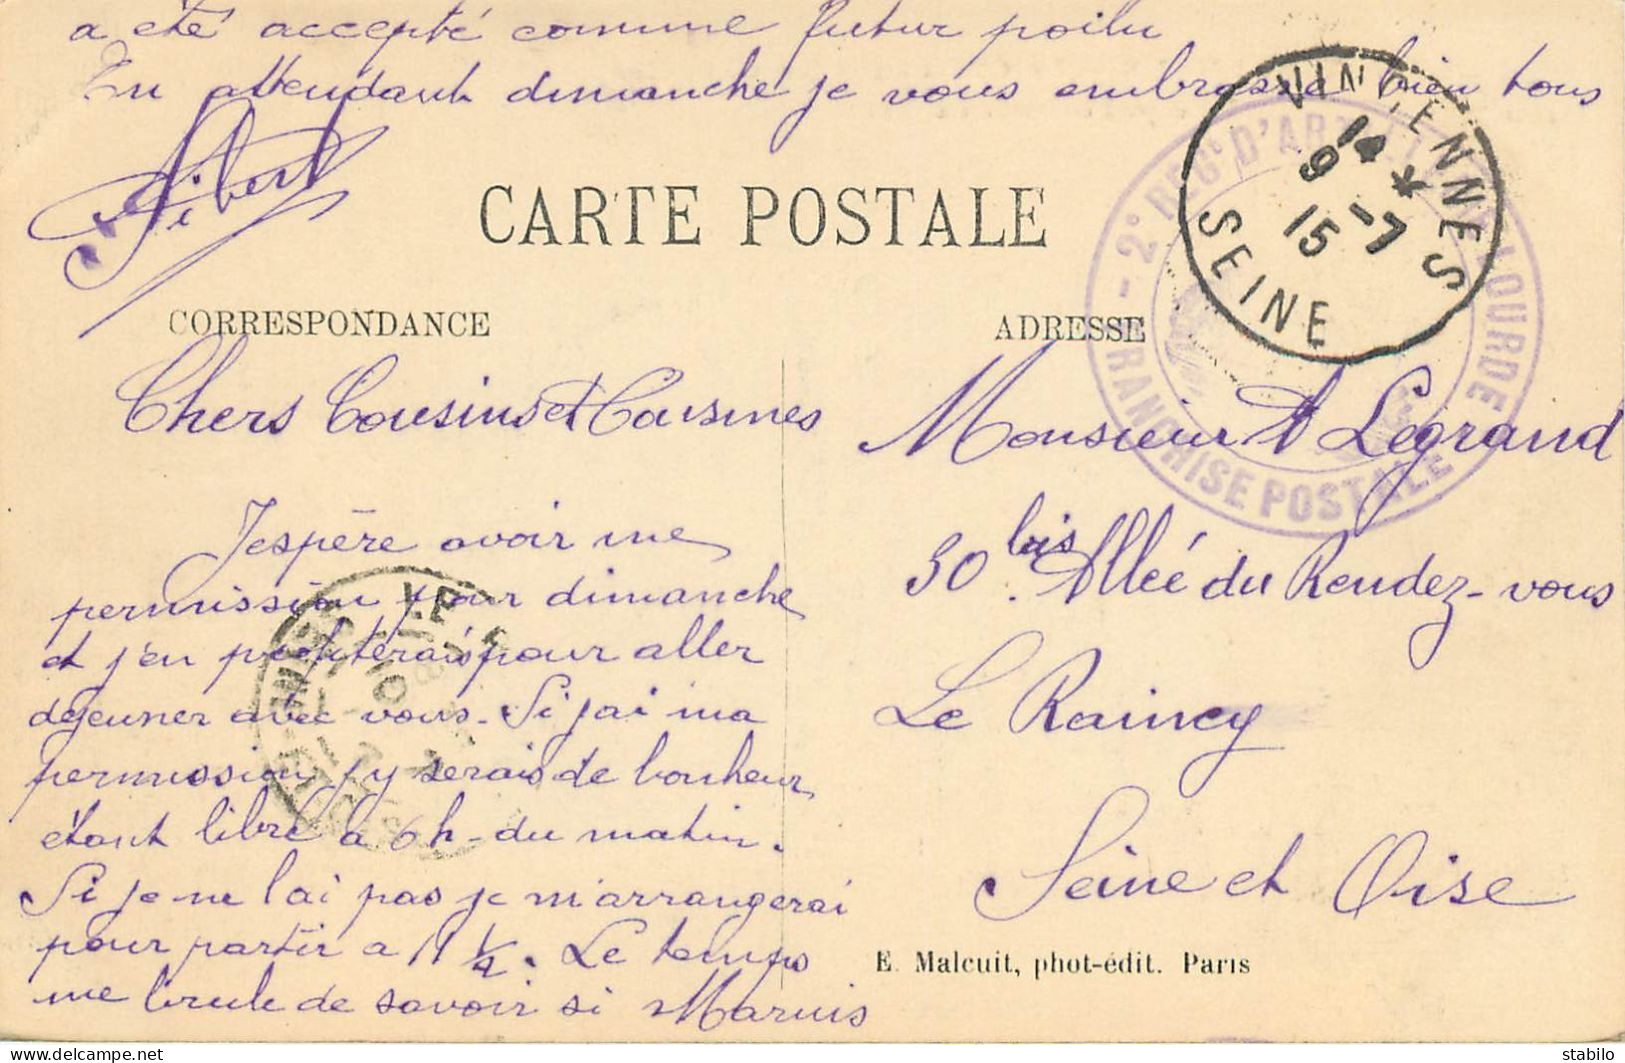 CACHET DU 2E REGIMENT D'ARTILLERIE LOURDE AVEC CACHET POSTAL DE VINCENNES DU 9.7.1915 - Oorlog 1914-18